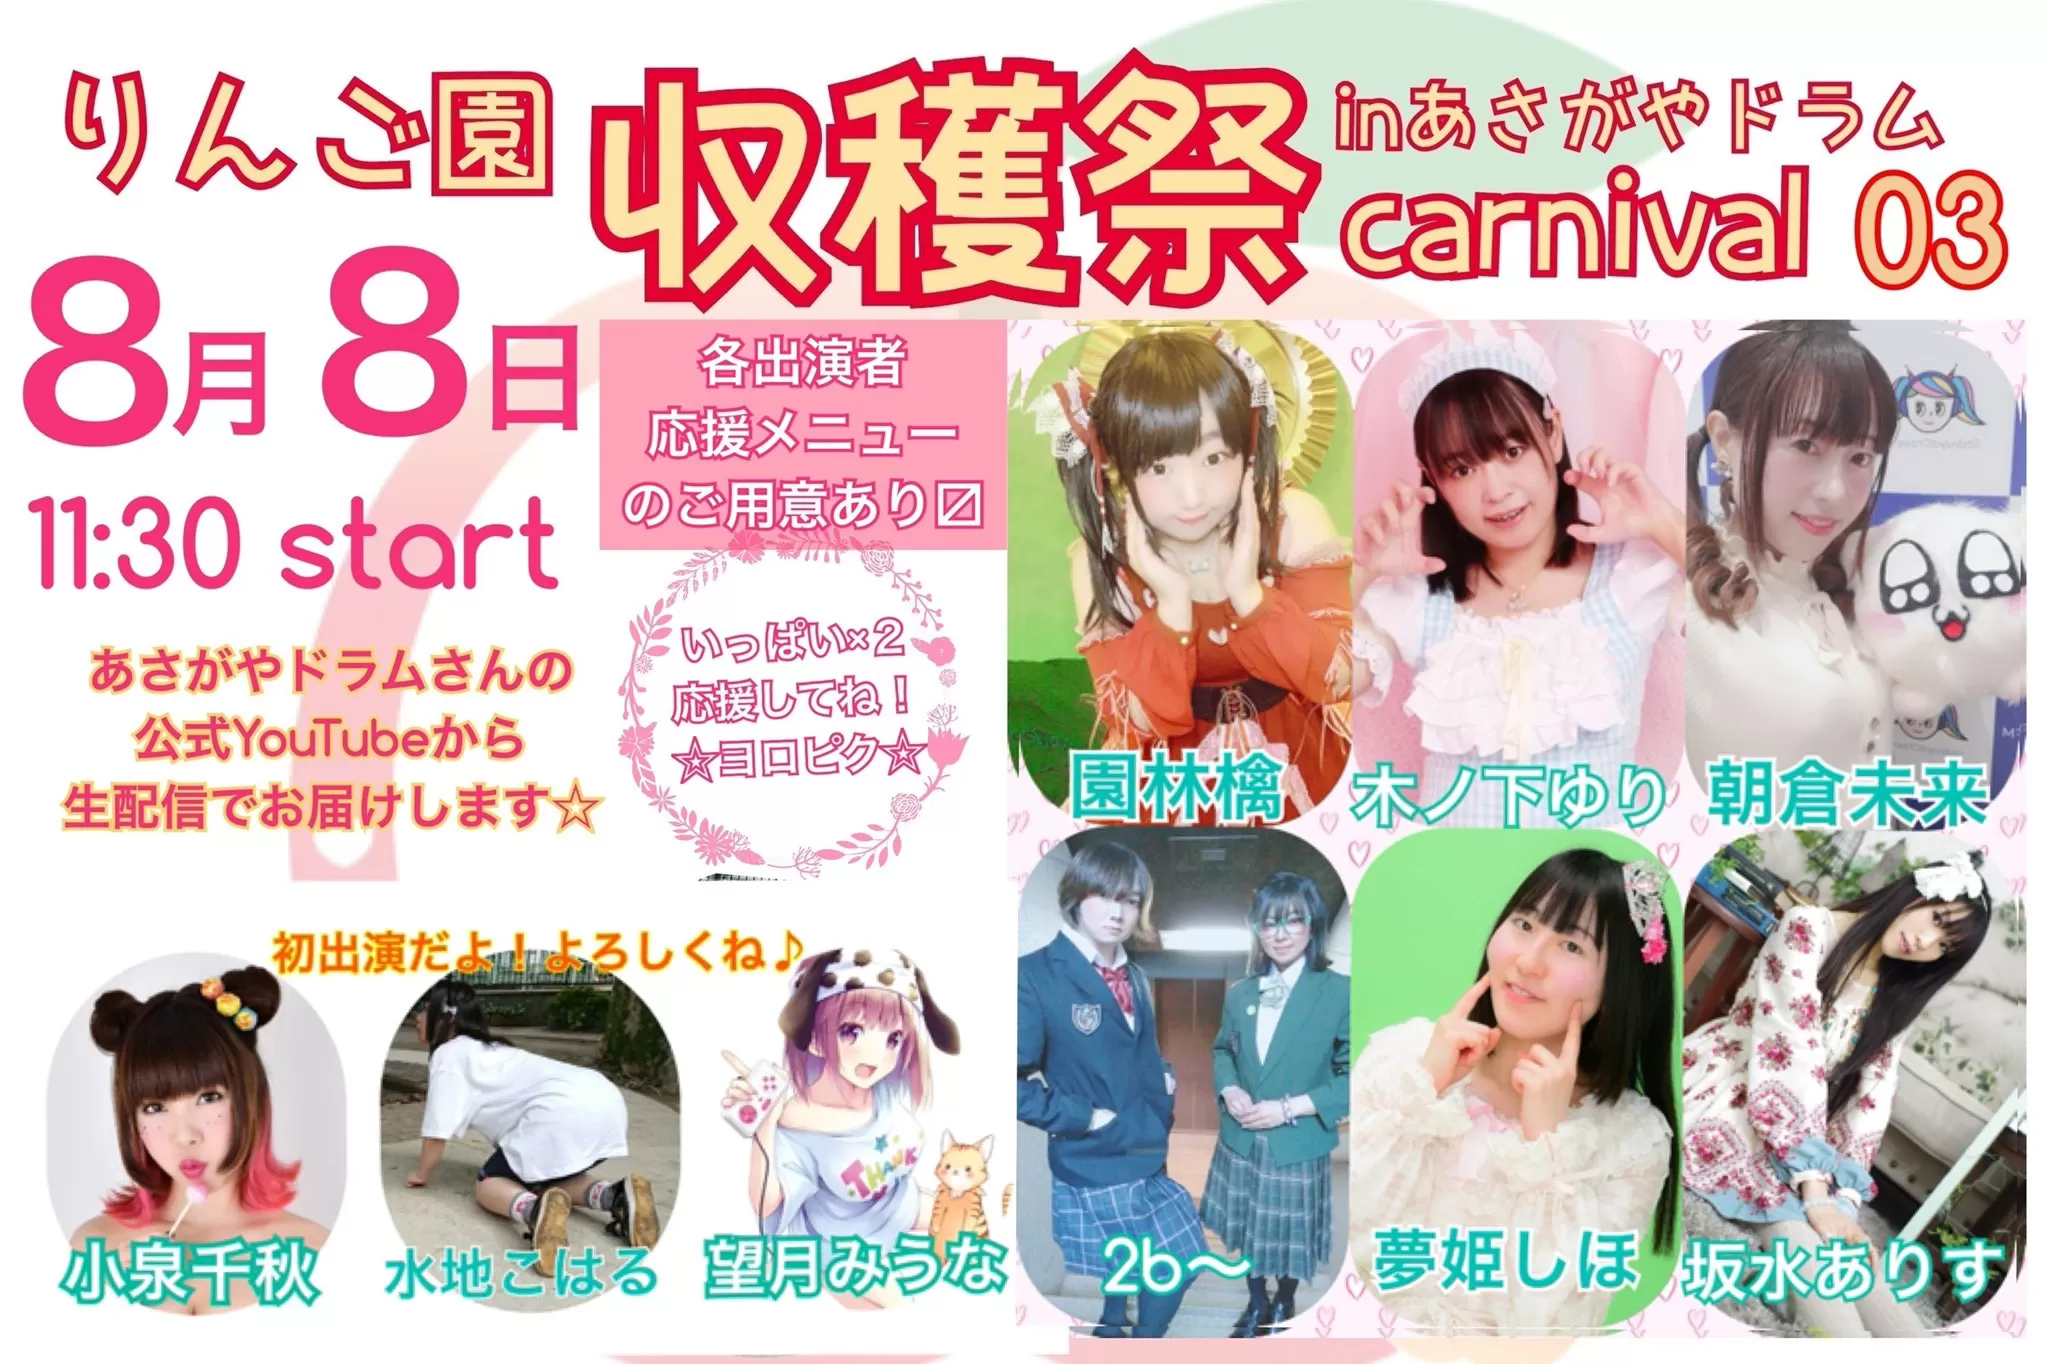 りんご園収穫祭〜carnival03〜